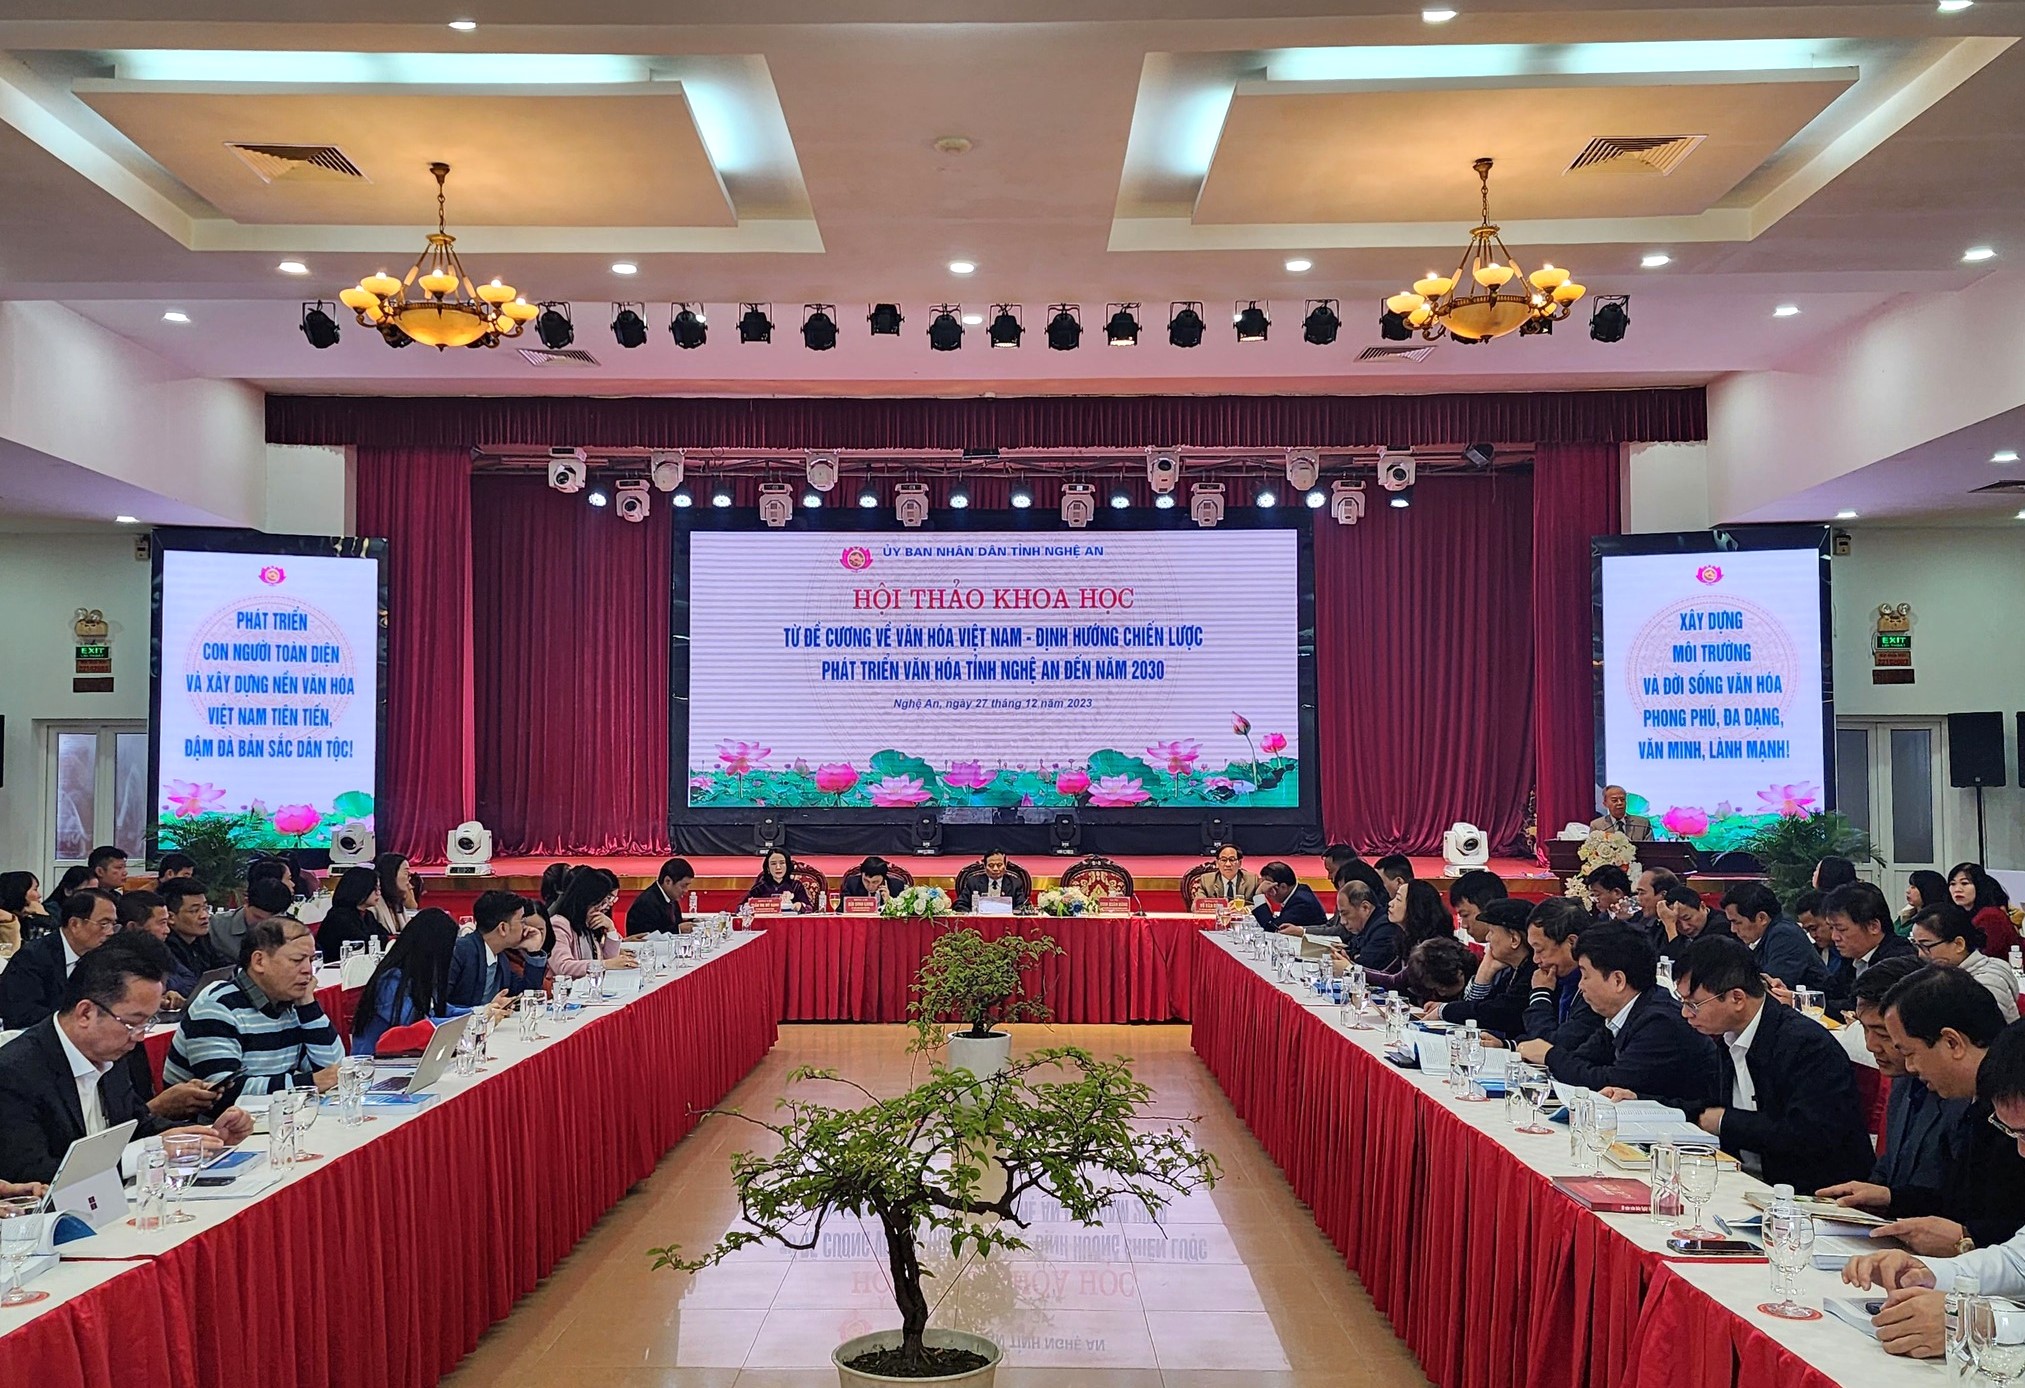 Hội thảo khoa học “Từ Đề cương về văn hóa Việt Nam - định hướng chiến lược phát triển văn hóa  tỉnh Nghệ An đến năm 2030”